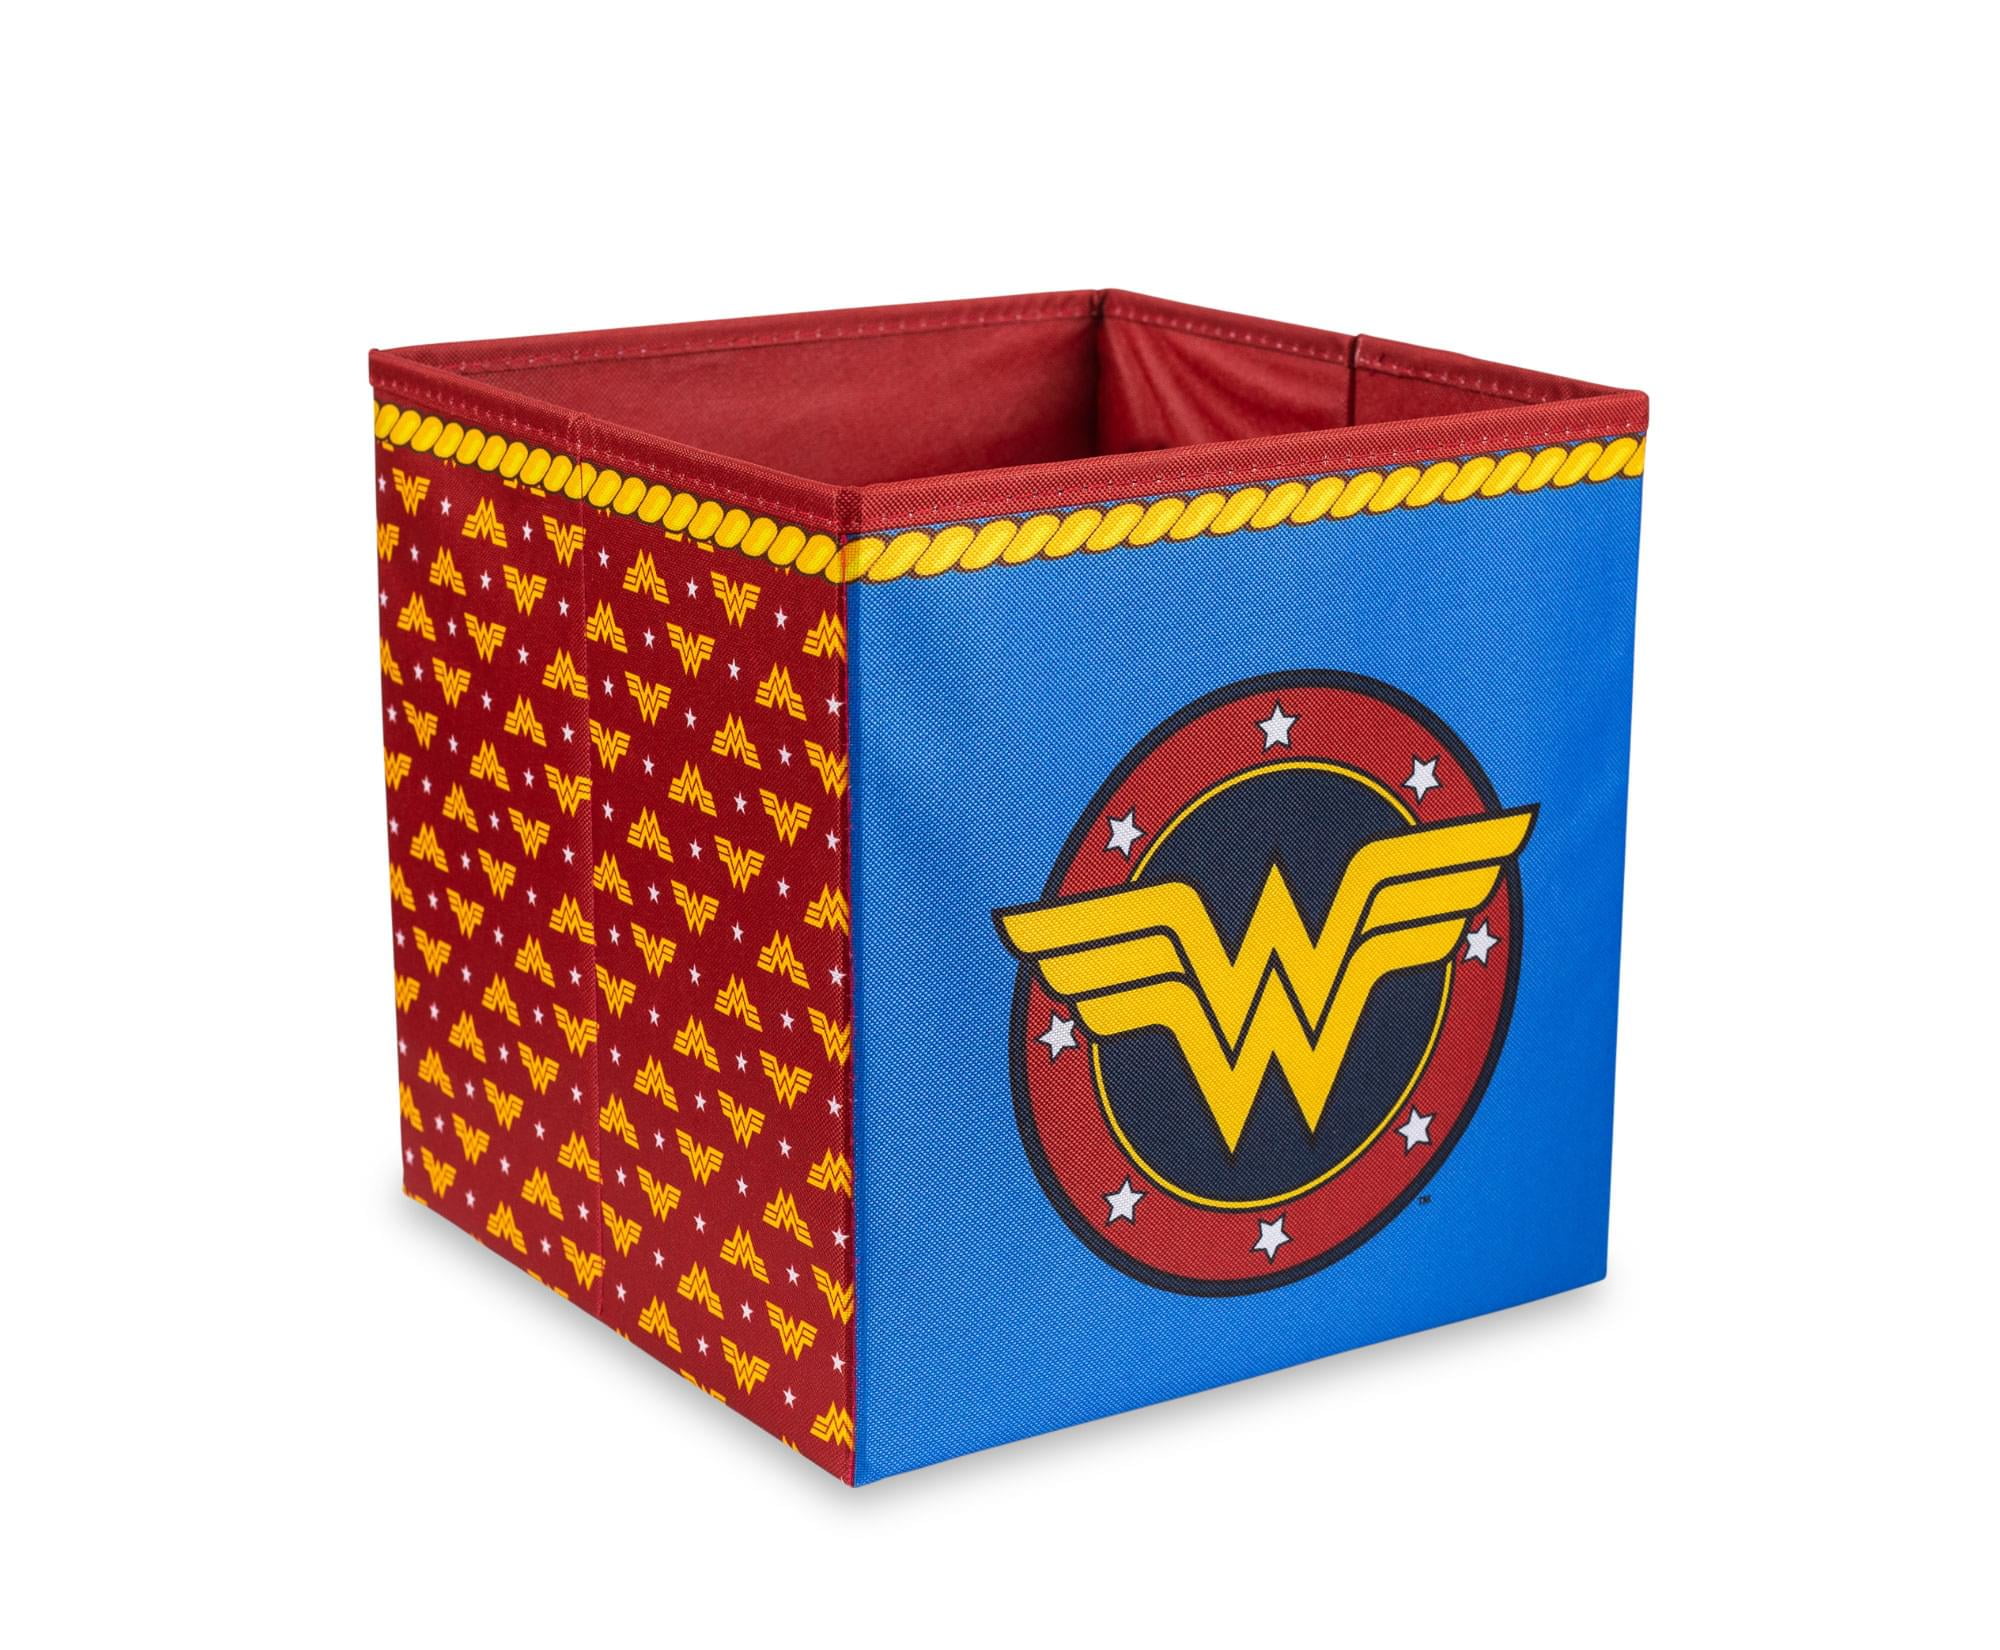 SUPERMAN "BLUE" Folding Storage Bin 10.5" x 10.5" x 10.5" DC Comics - NEW 